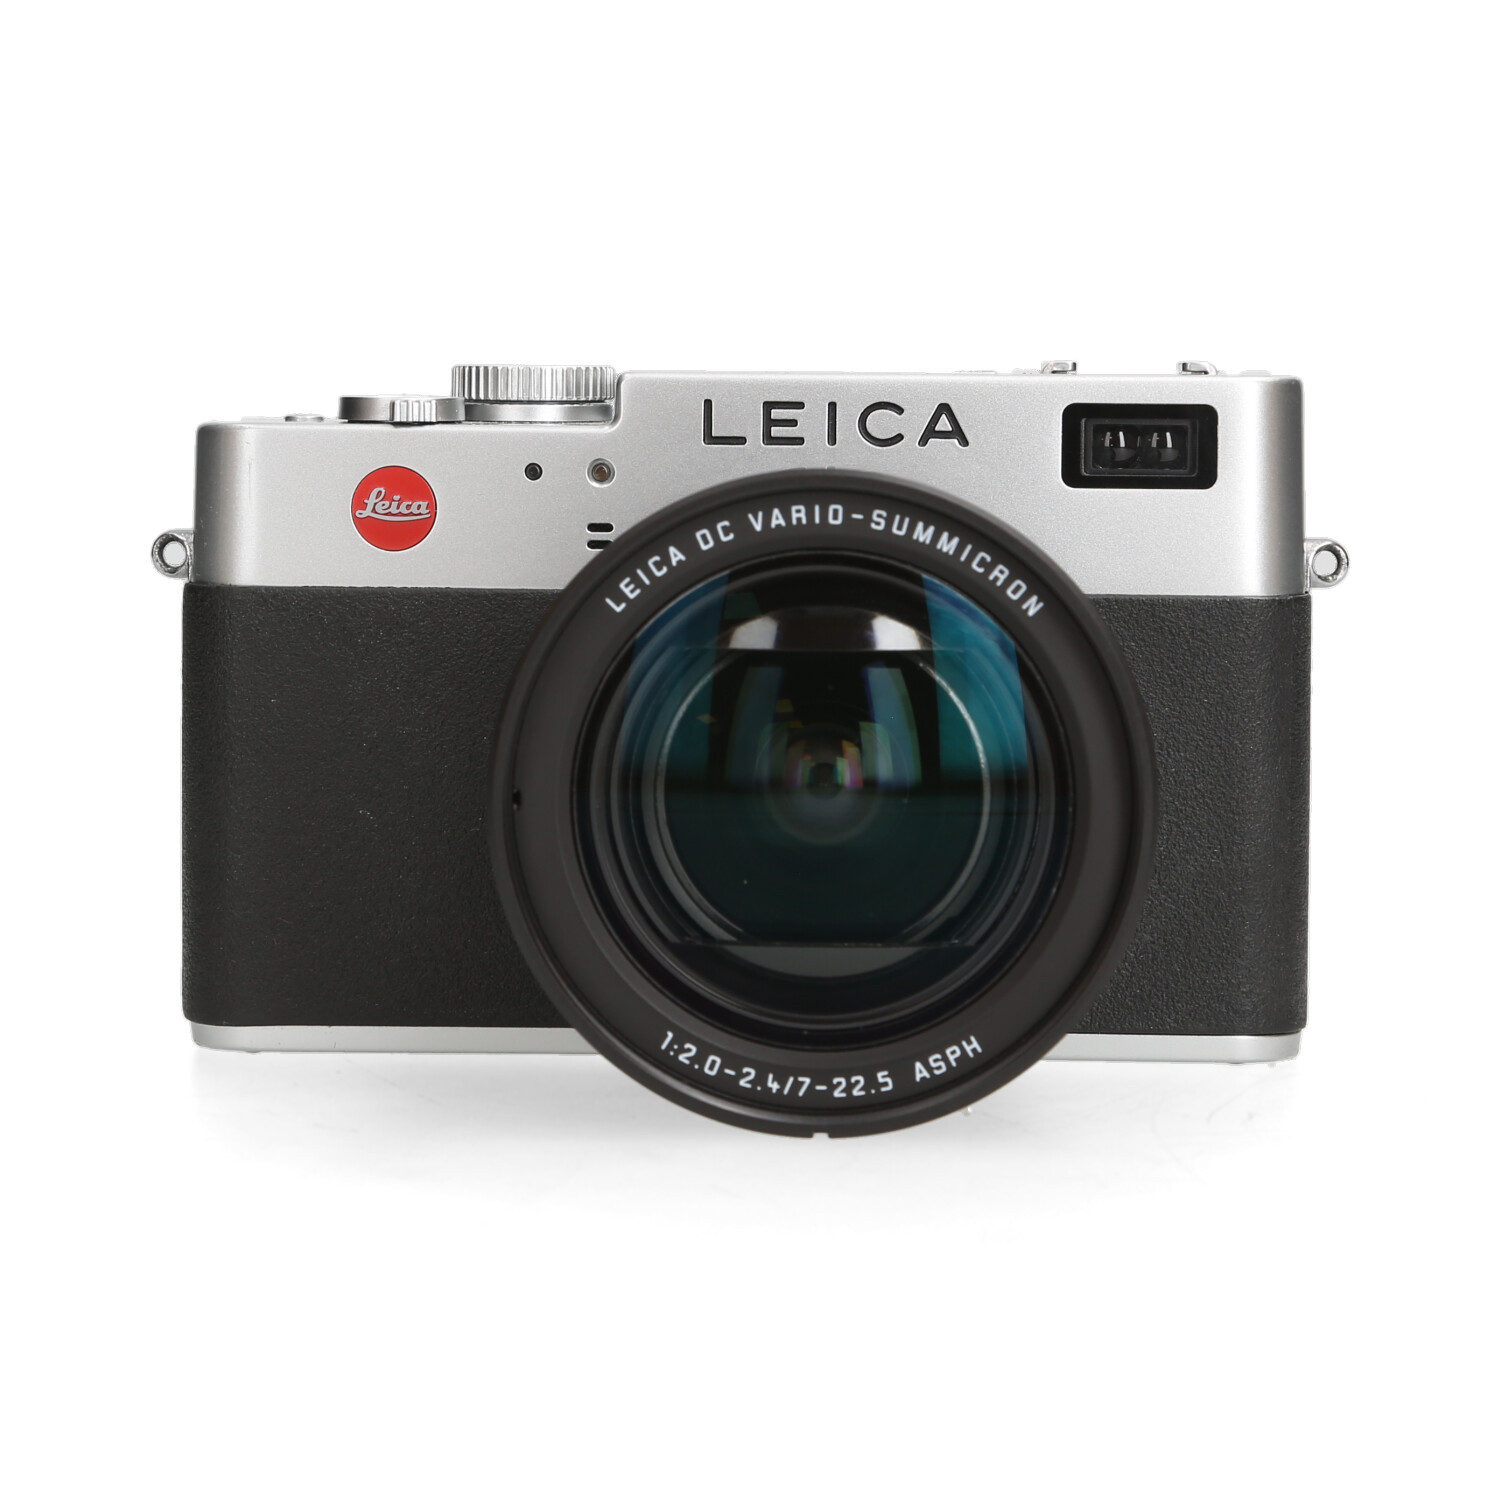 Leica Leica Digilux 2